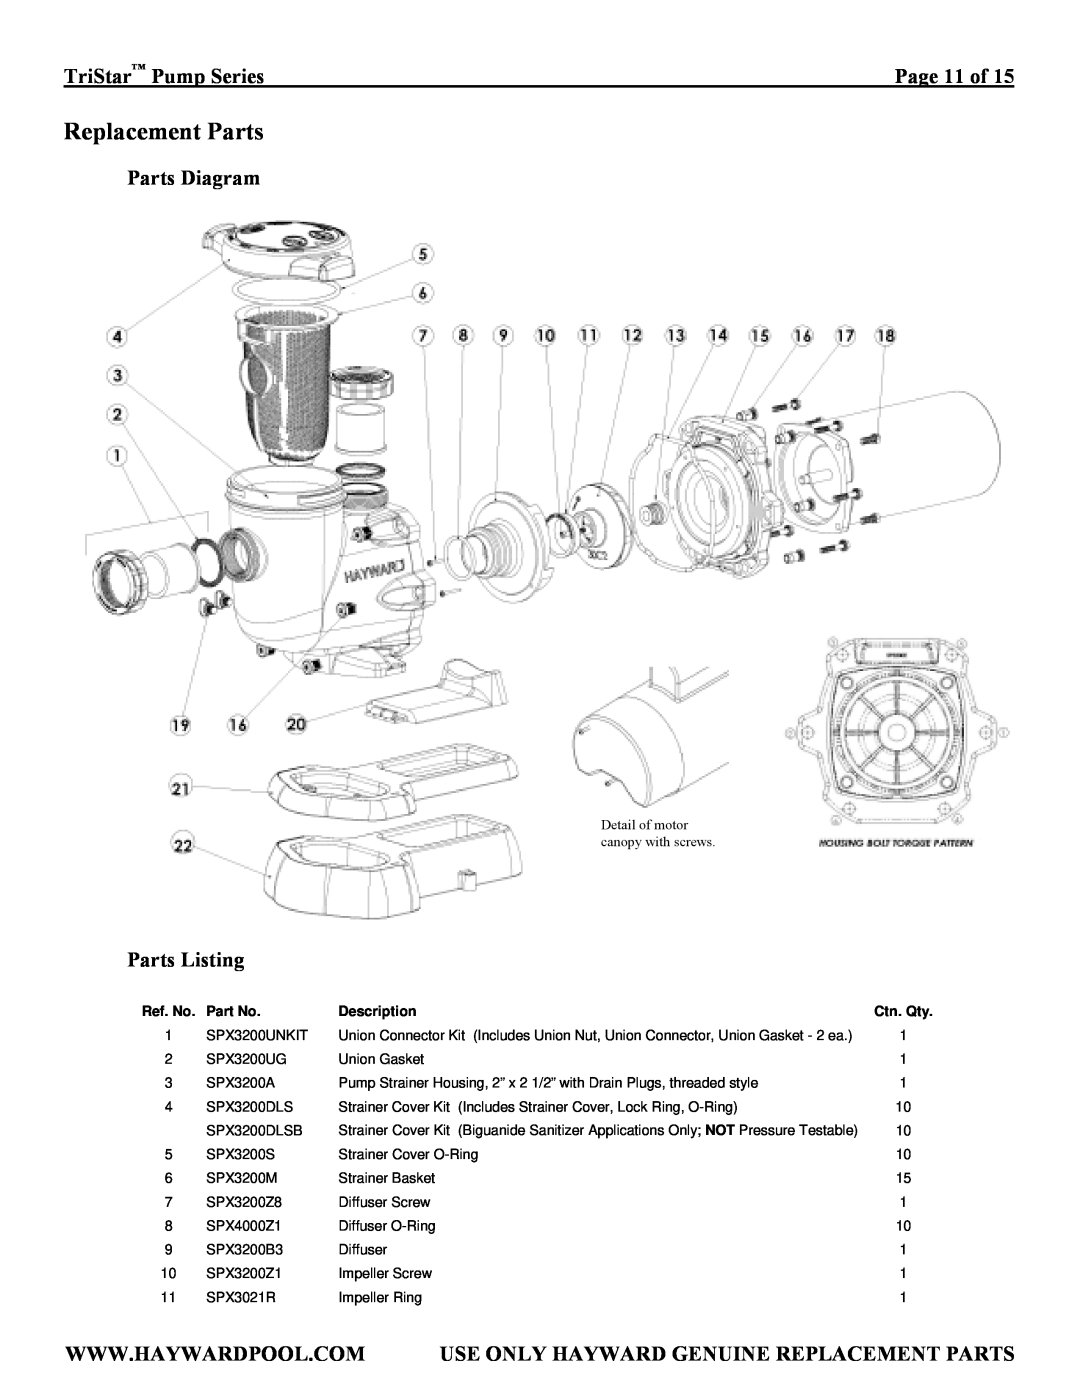 TriStar SP3207X10, SP3007EEAZ Replacement Parts, Parts Diagram, Parts Listing, TriStar Pump Series, Ref. No, Description 